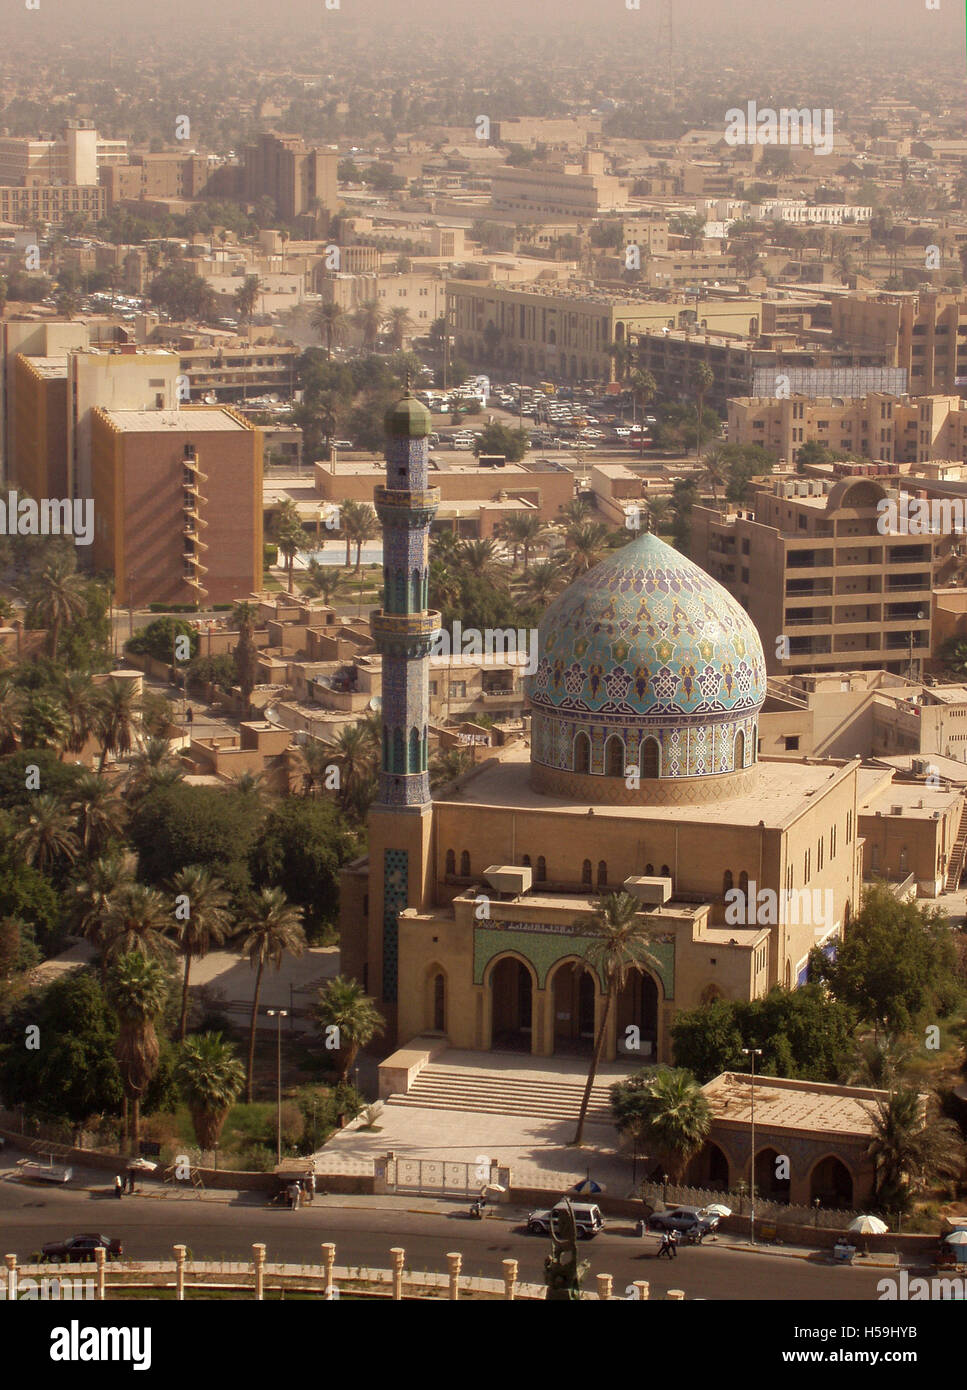 6 novembre 2003 la vue est depuis le toit de l'hôtel Sheraton à Bagdad : la mosquée du 17 Ramadan et la ville au-delà. Banque D'Images